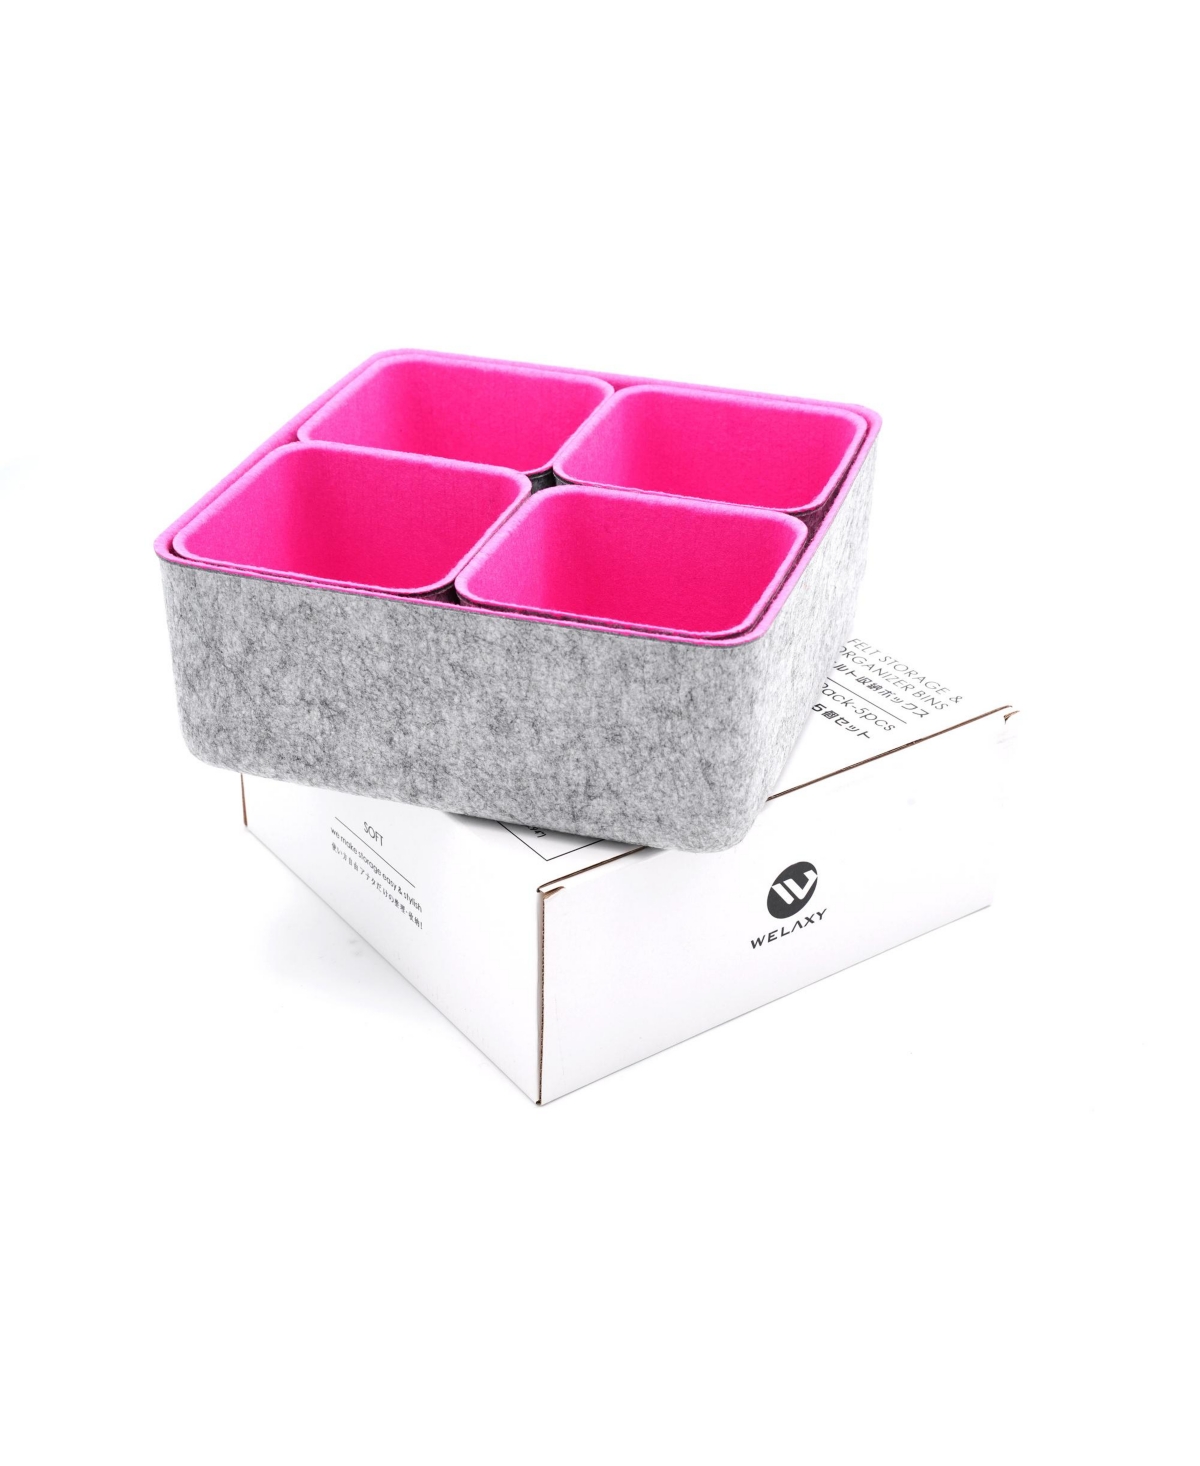 Welaxy 5 Piece Square Felt Storage Bin Set In Hot Pink